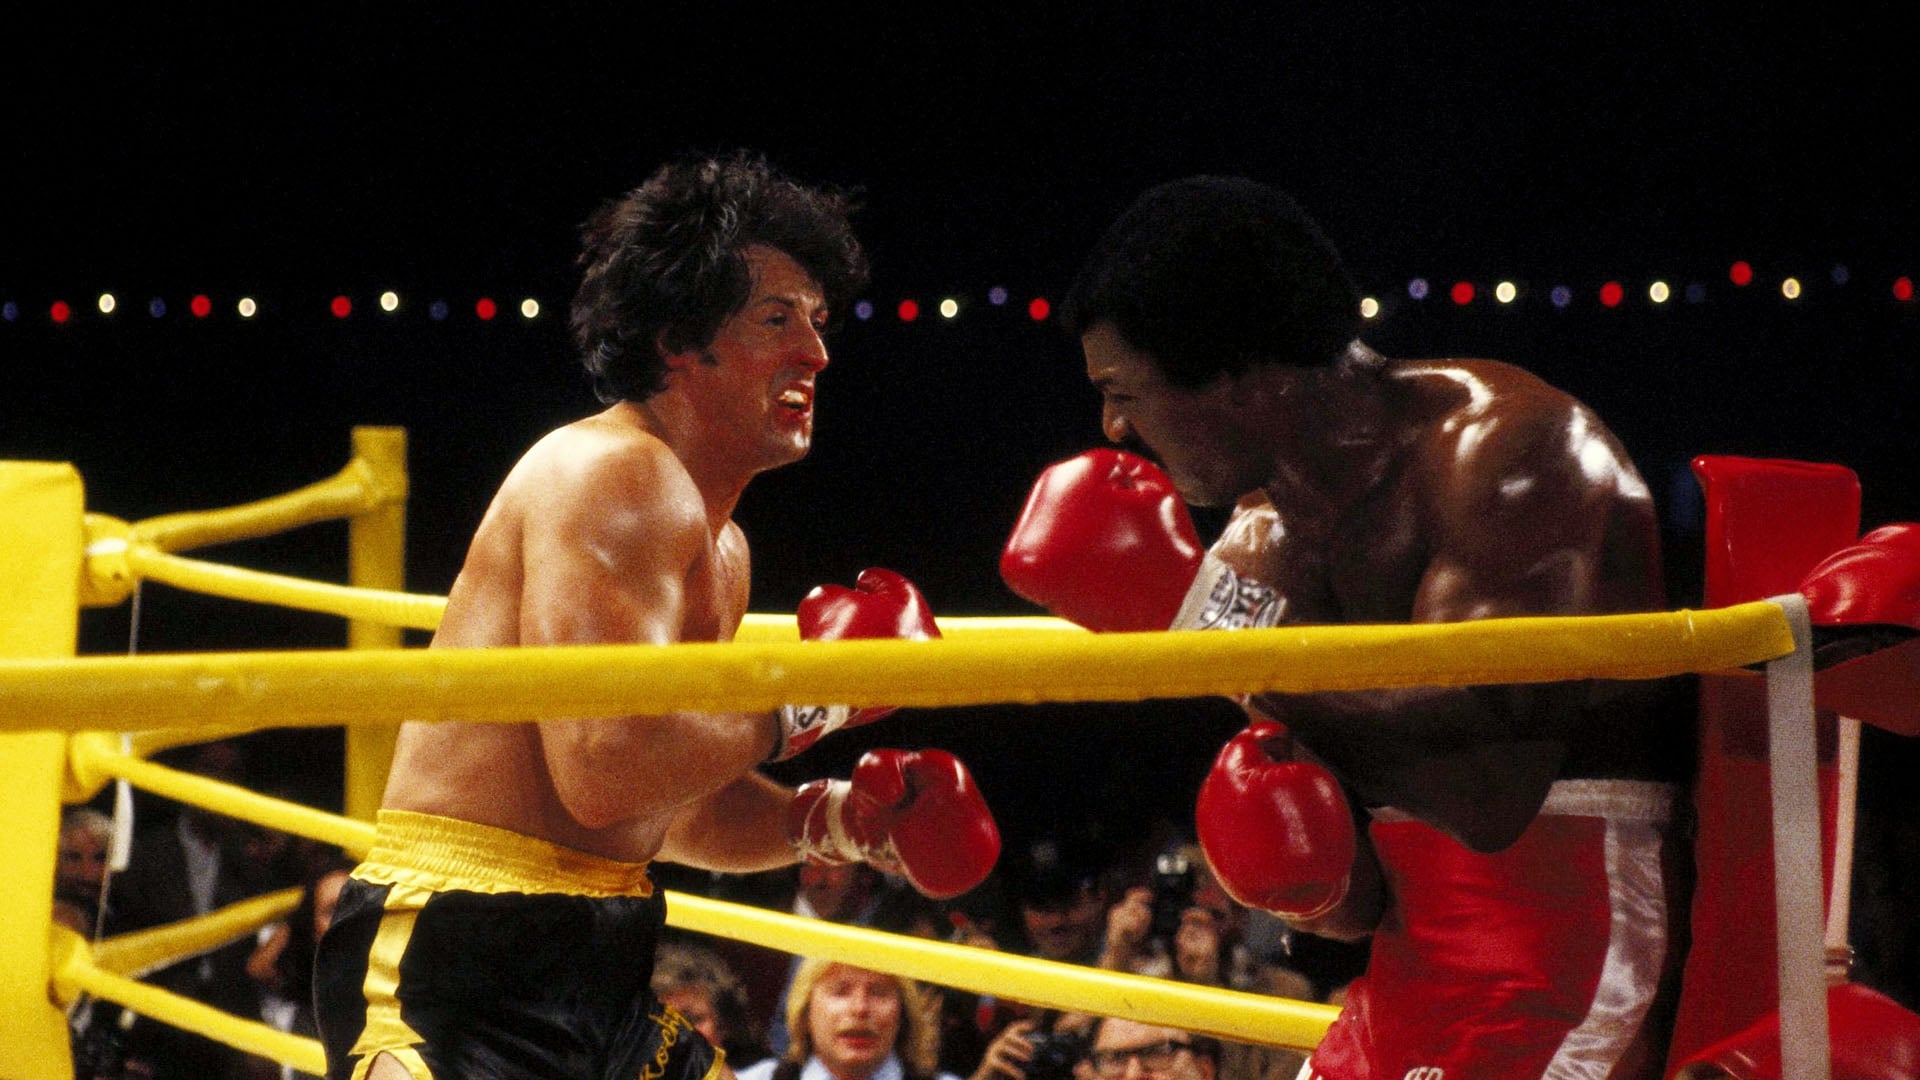 Rocky II : La Revanche (1979)